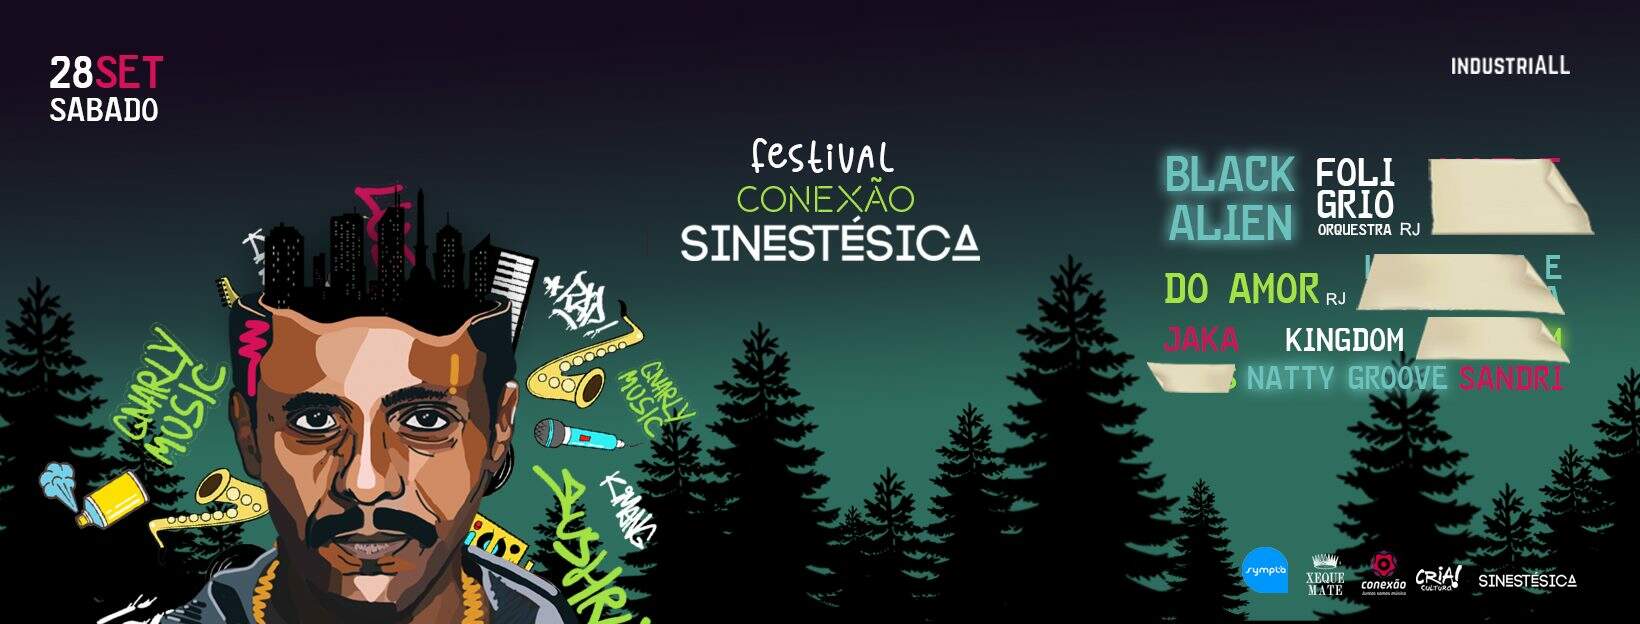 Festival Conexão Sinestésica